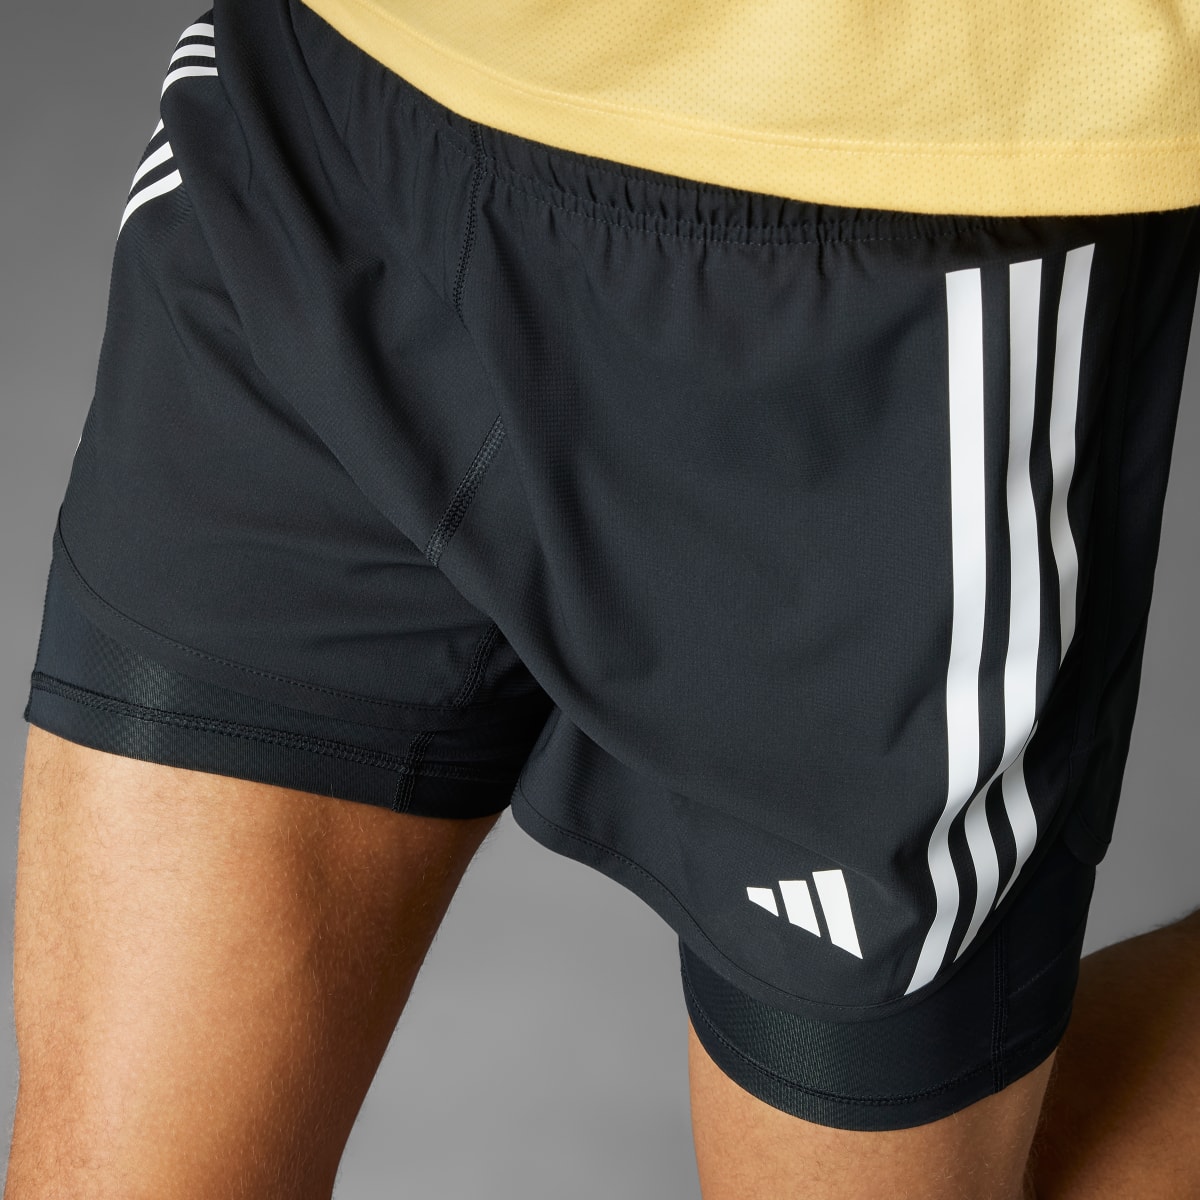 Adidas Own the Run 3-Streifen 2-in-1 Shorts. 4